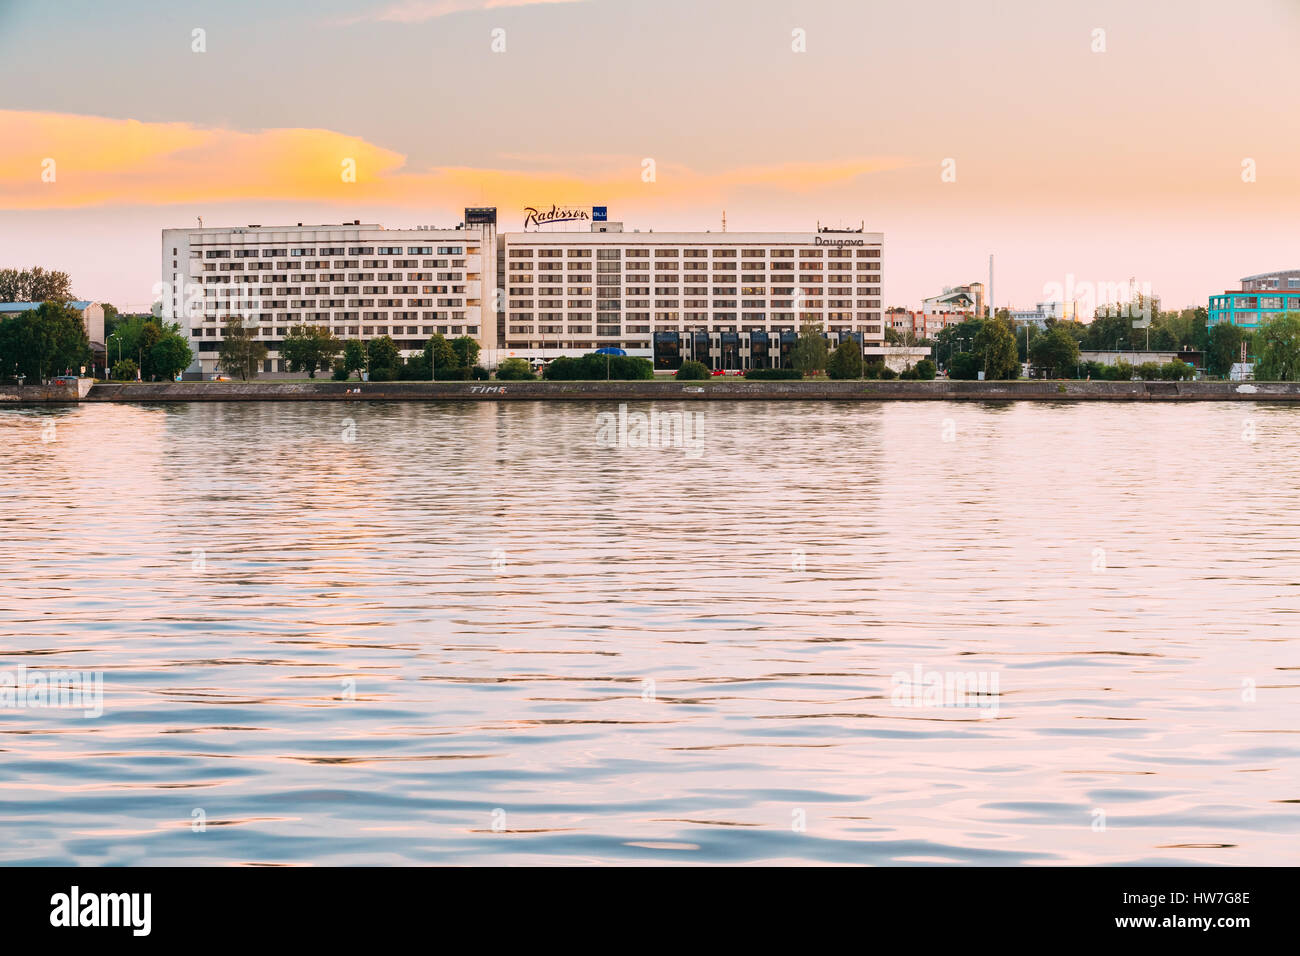 Riga, Lettonia - 1 Luglio 2016: Radisson Blu Hotel al tramonto di sera tempo presso la banca di fiume Daugava. Foto Stock